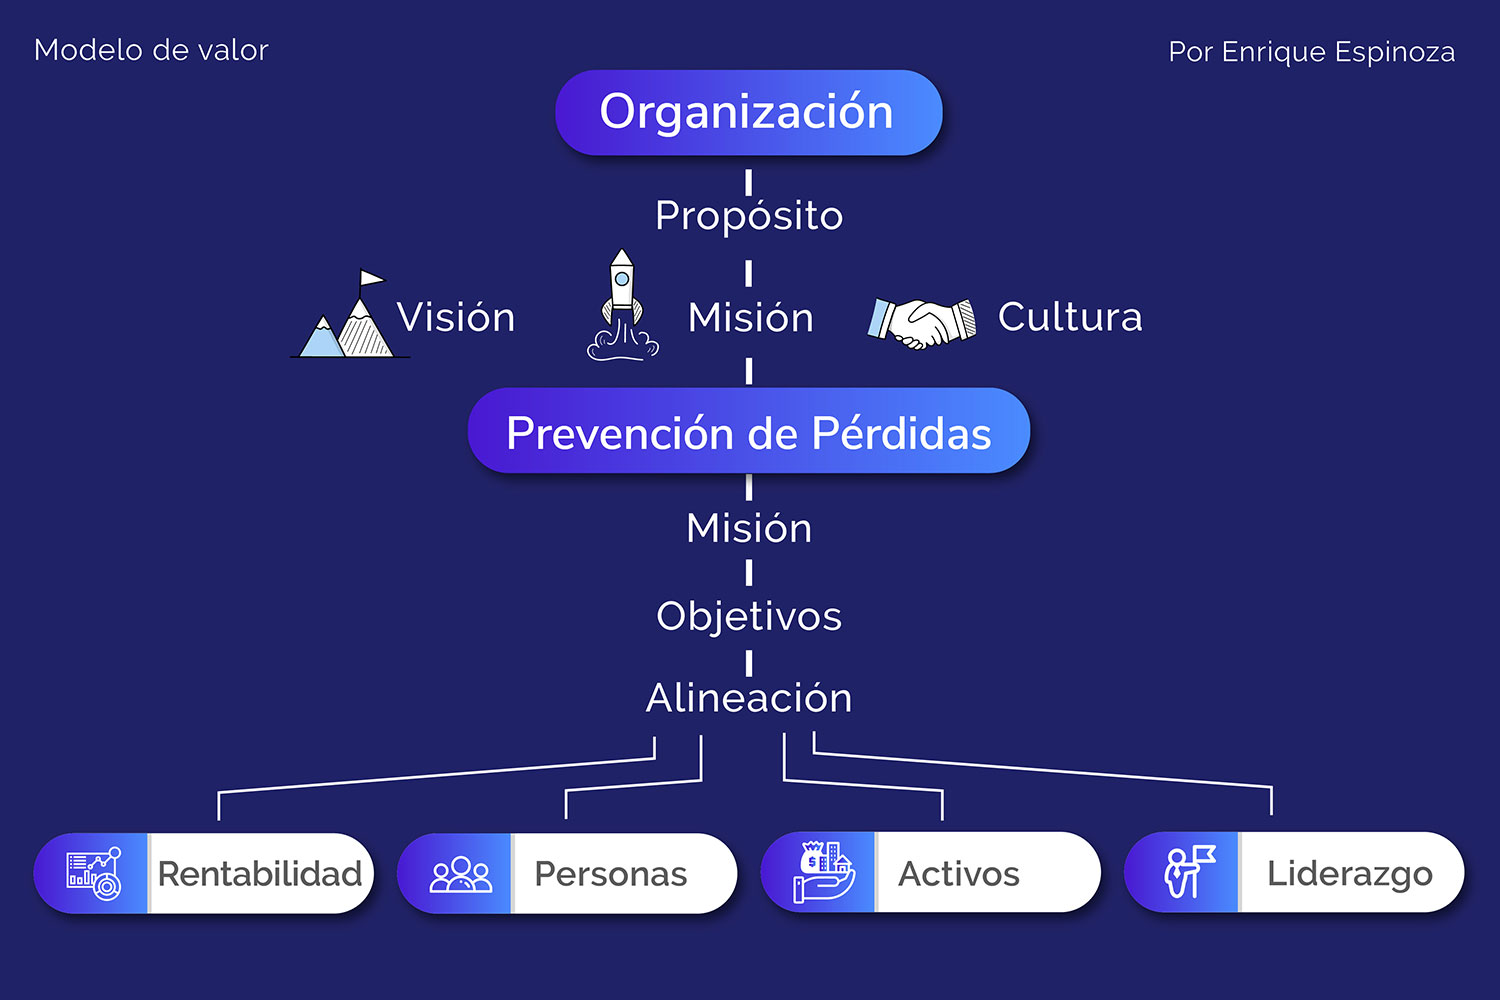 Modelo de valor de prevención de pérdidas, por Enrique Espinoza.